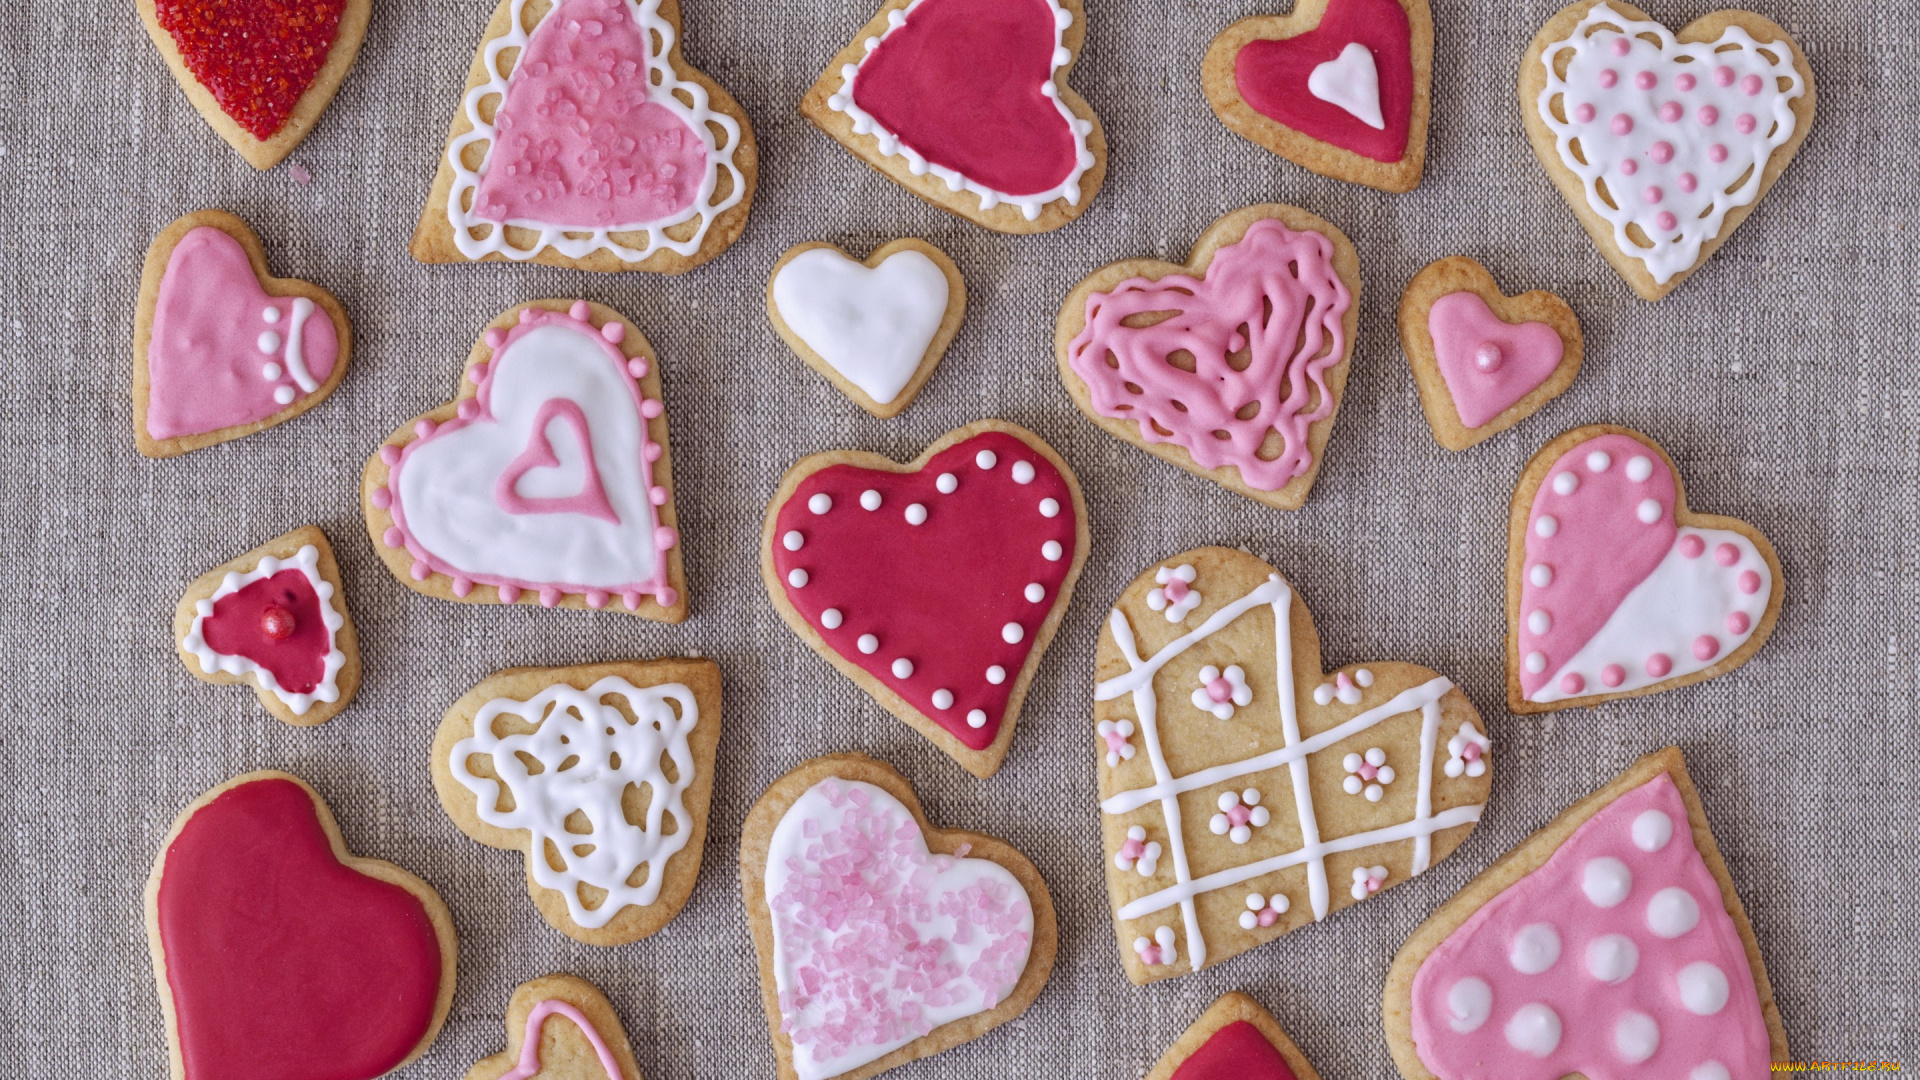 еда, пирожные, , кексы, , печенье, праздник, выпечка, валентинки, сердечки, glaze, печенье, глазурь, hearts, valentines, cookies